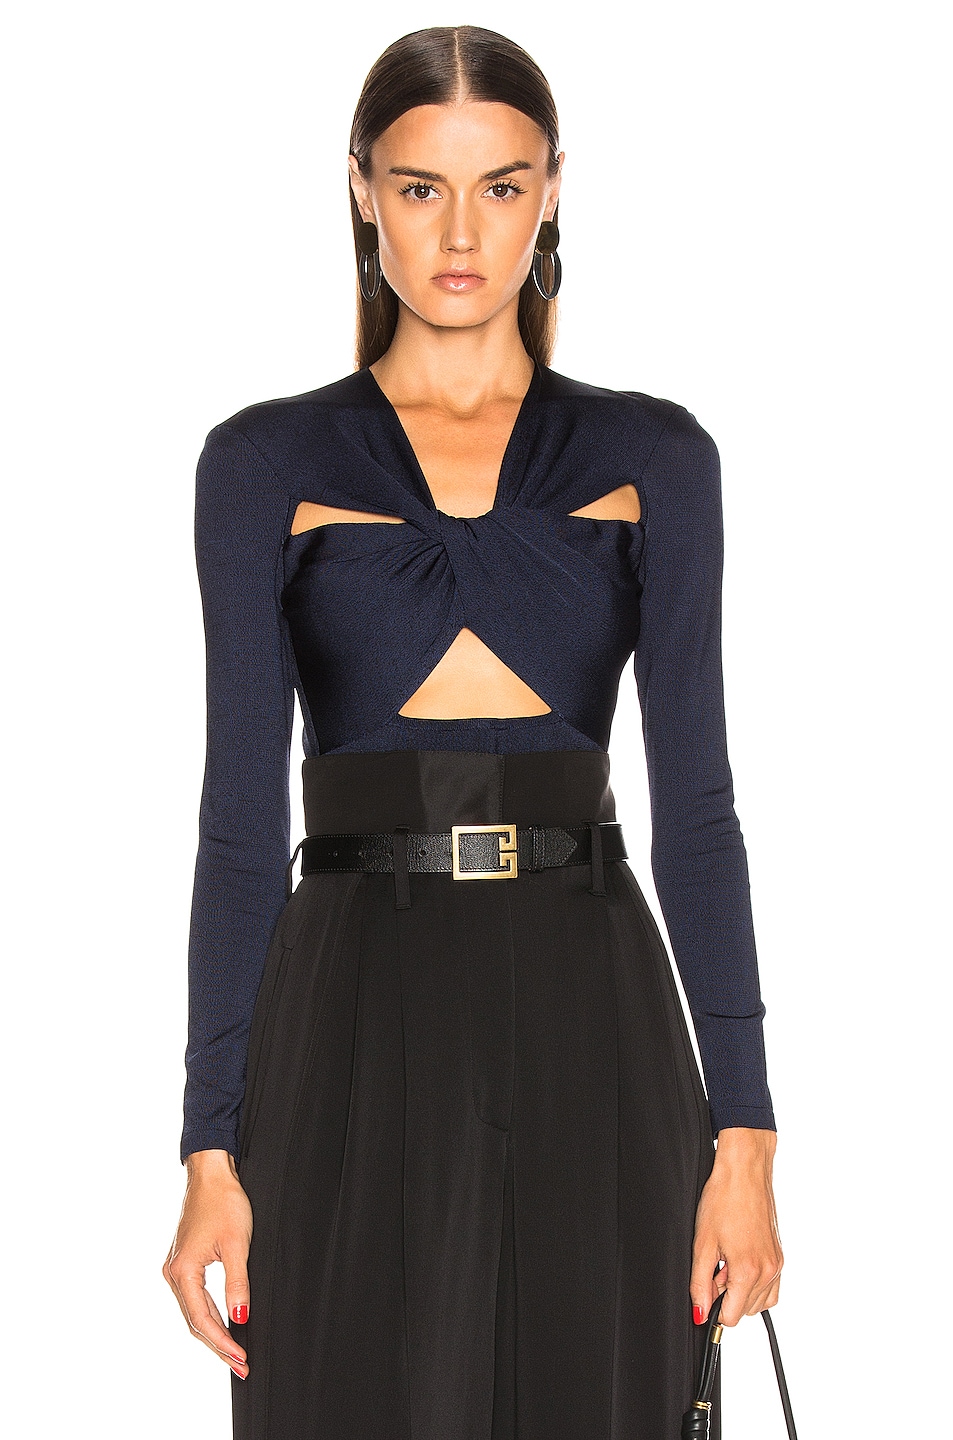 Givenchy Cutout Bodysuit in Black & Blue | FWRD